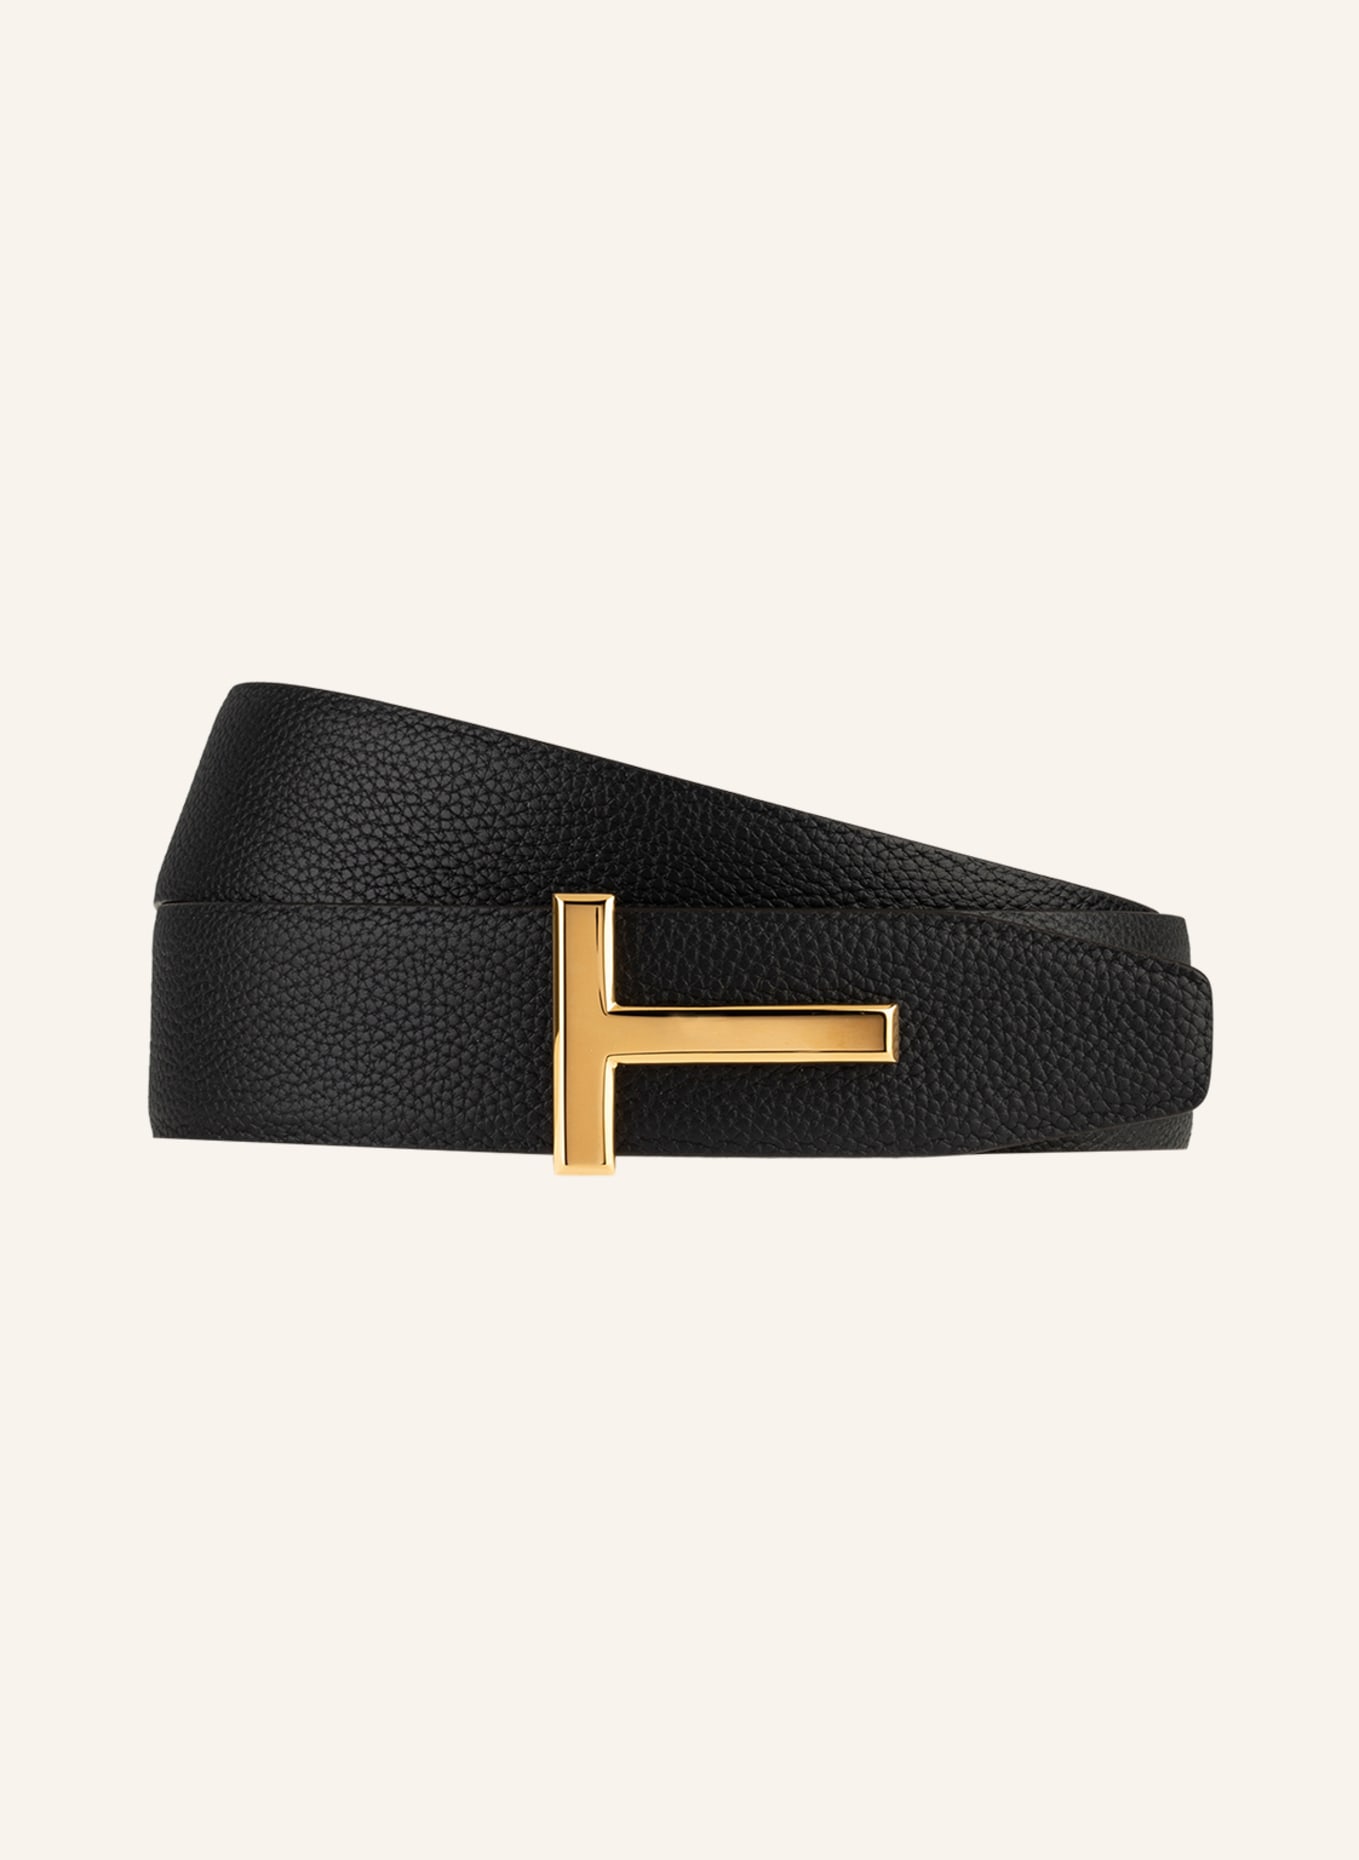 TOM FORD Leather belt, Color: BLACK (Image 1)